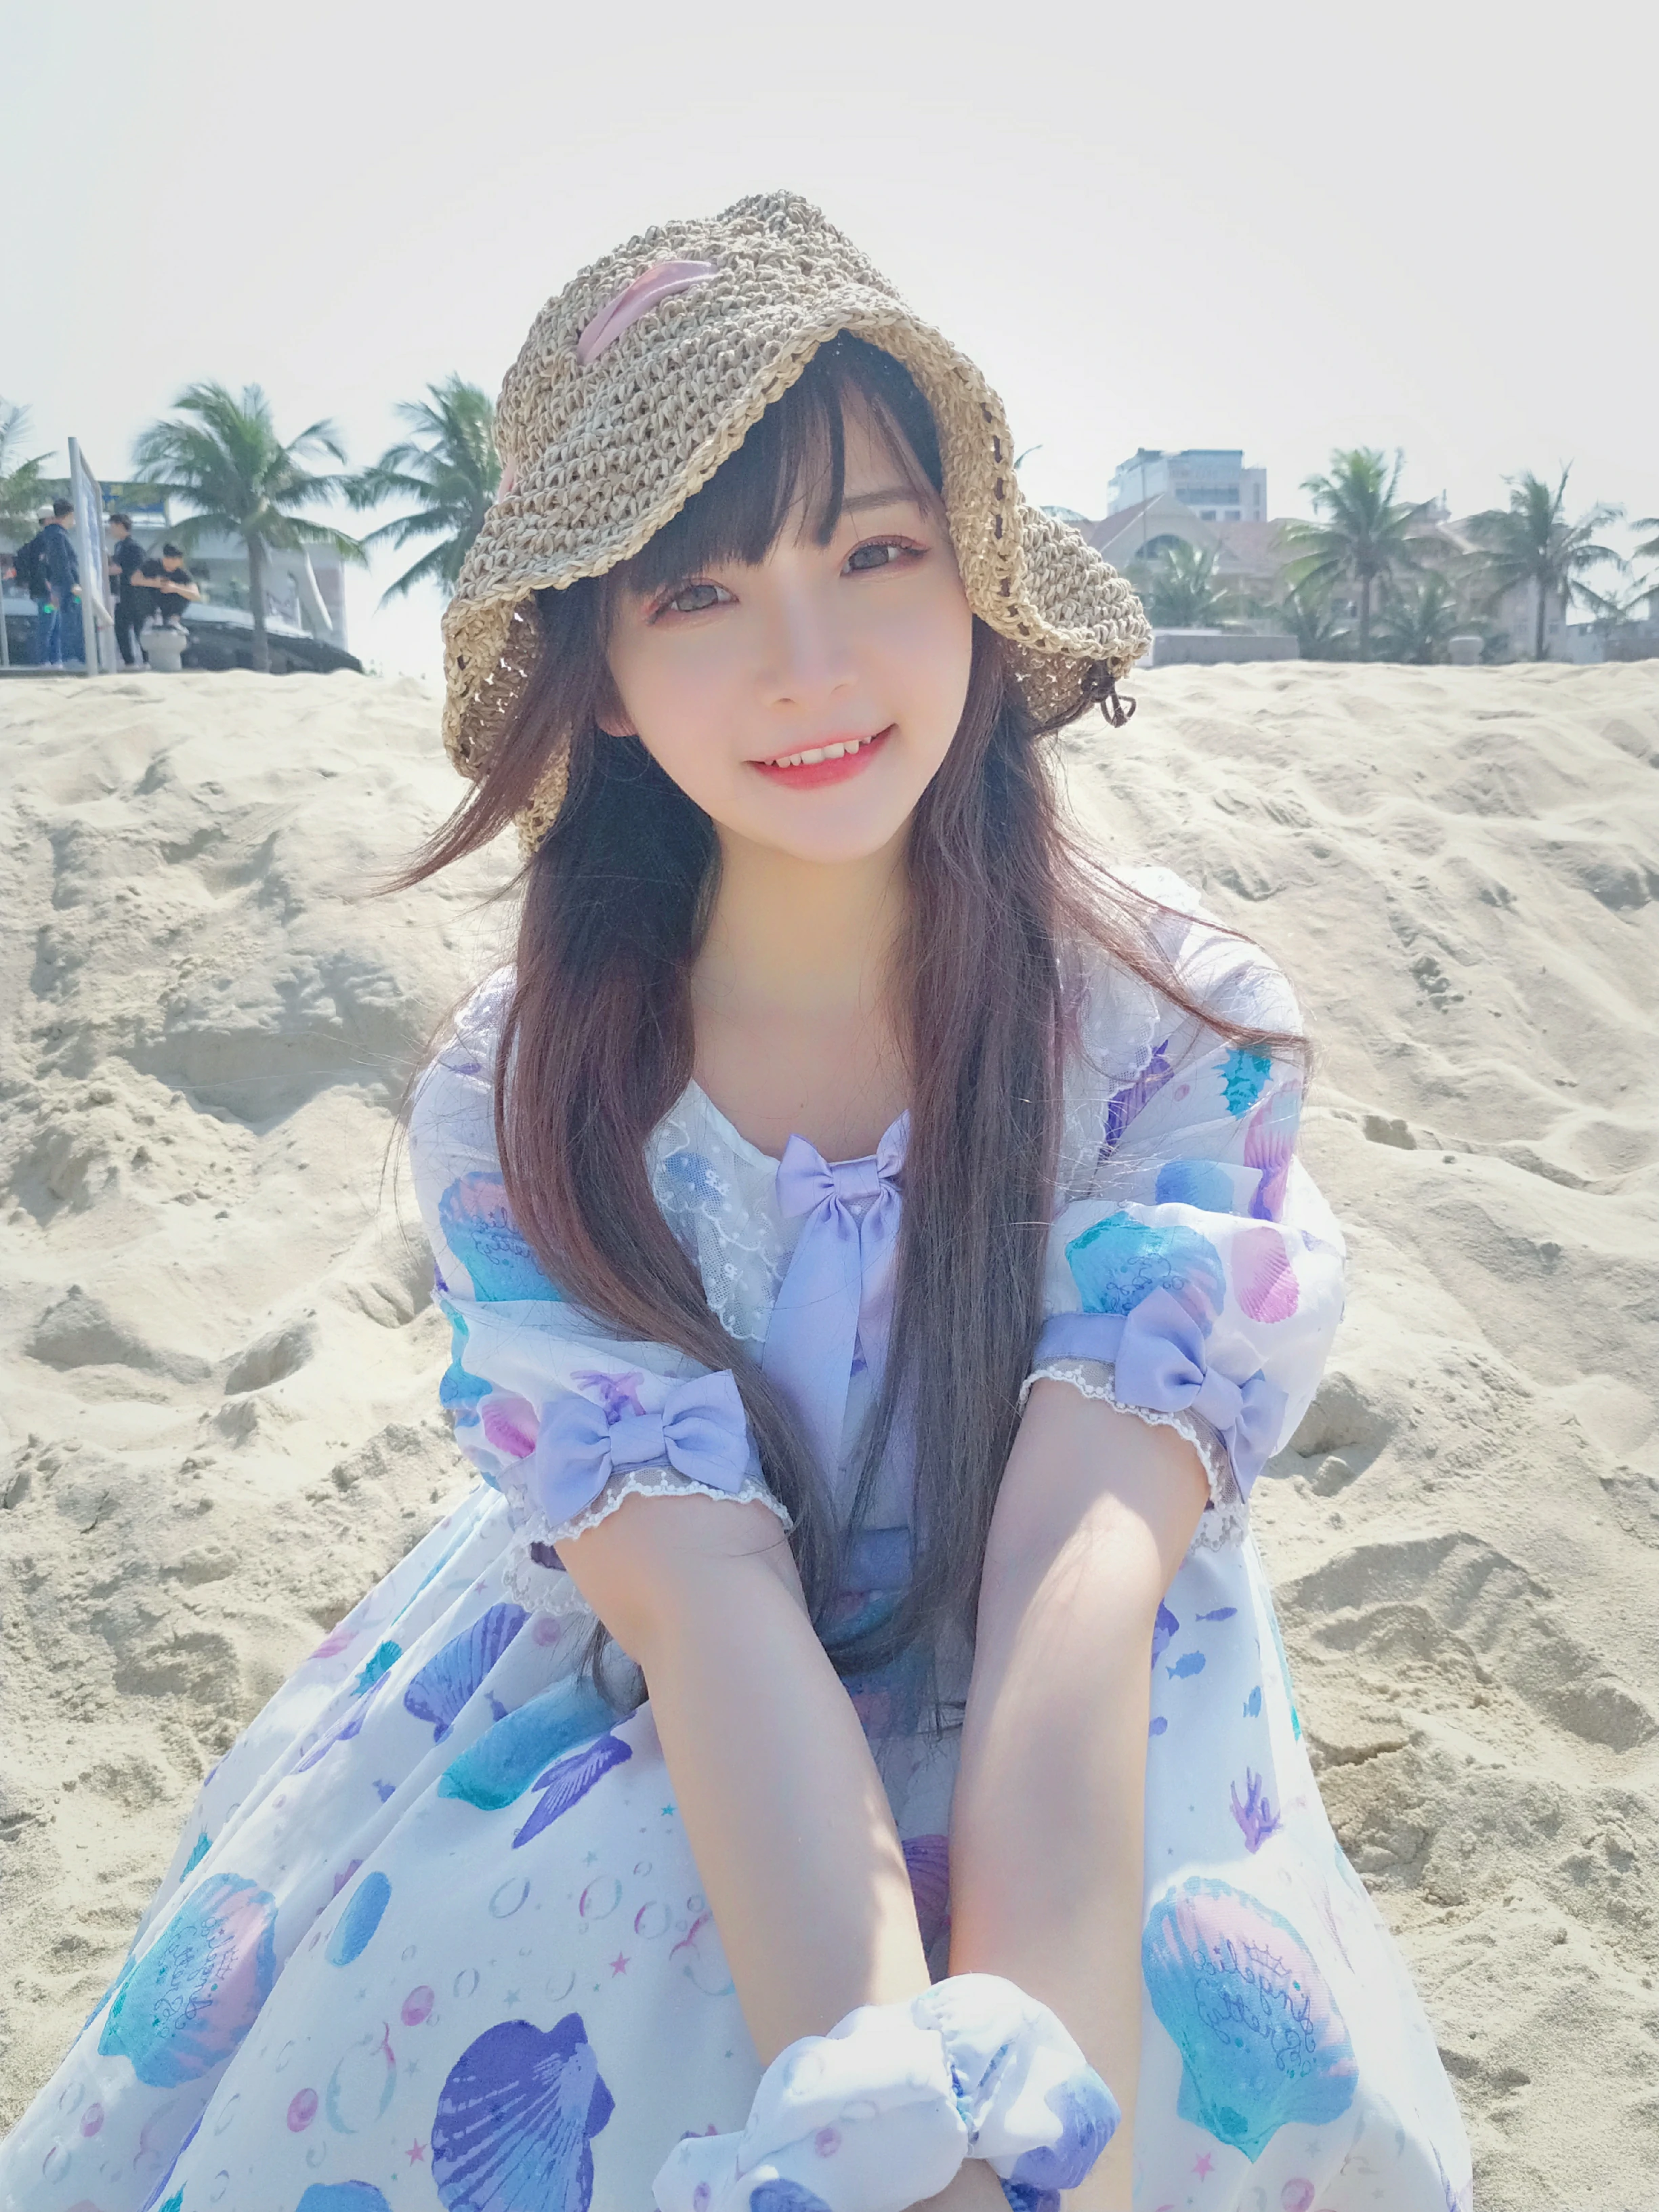 清纯少女 古川kagura 蓝色连身裙之沙滩写真,_20190208_072252